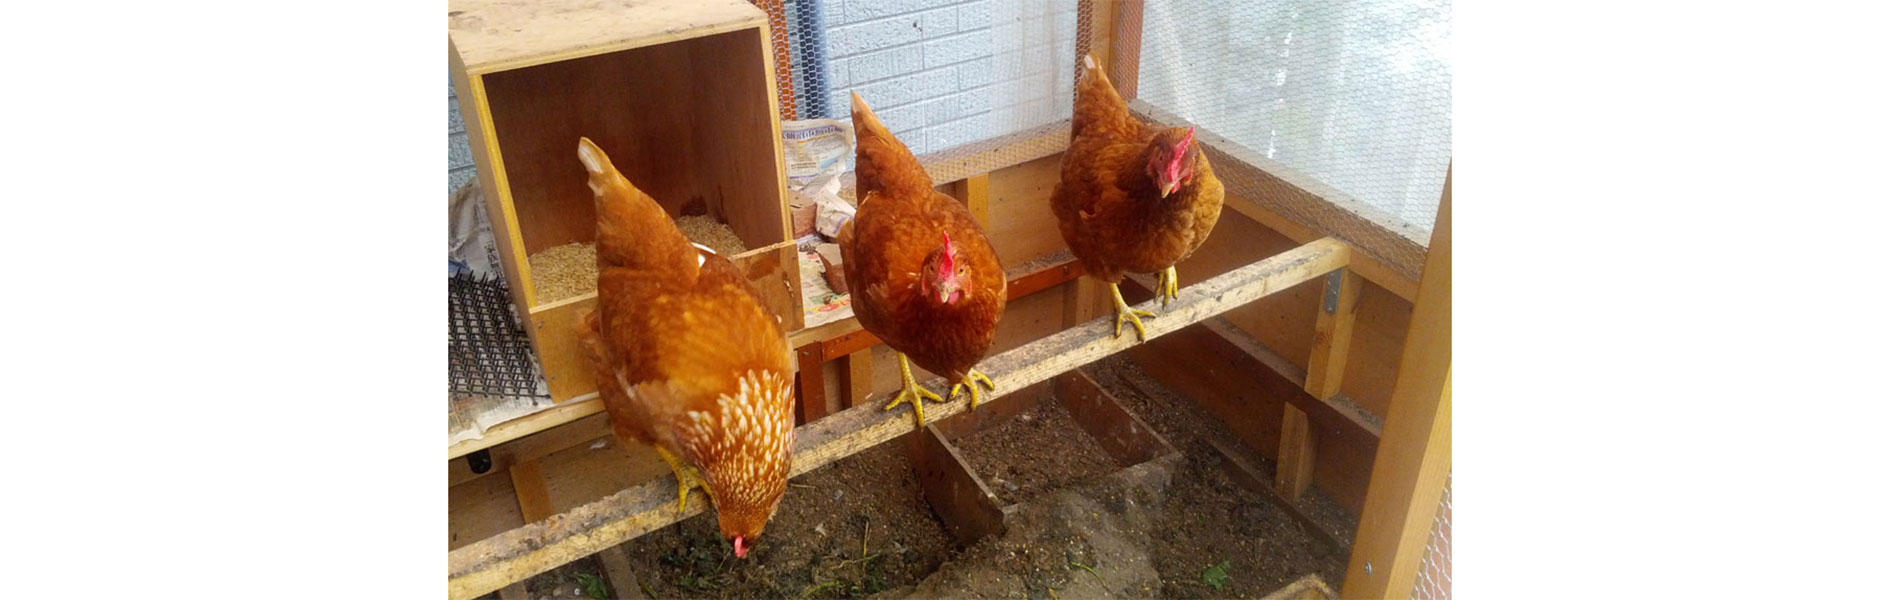 鶏舎の中で撮った3羽のニワトリ_トップスライド画像